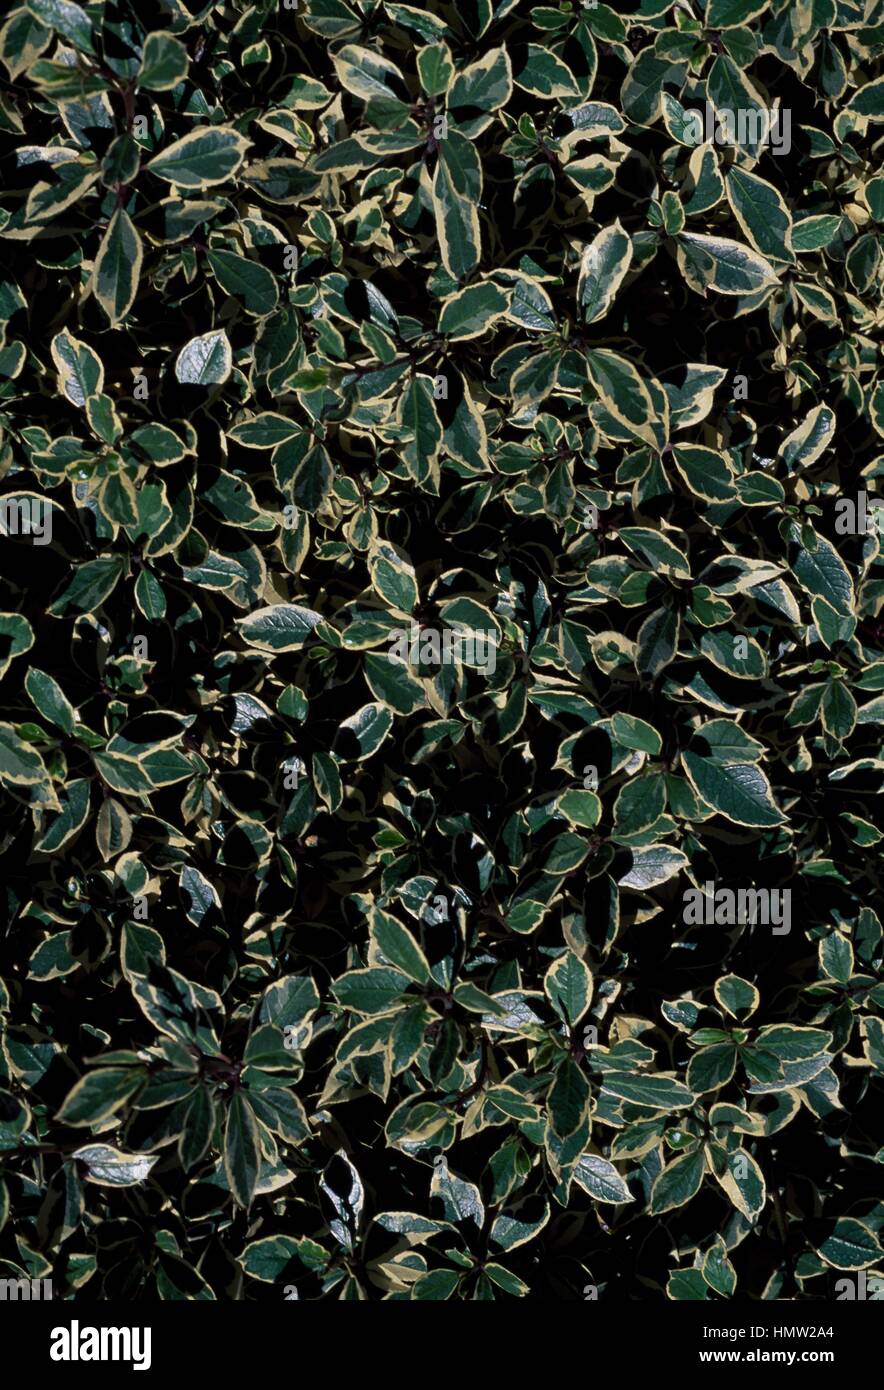 Frangola italiana o Mediterranea frangola (Rhamnus alaternus variegata), Rhamnaceae. Foto Stock